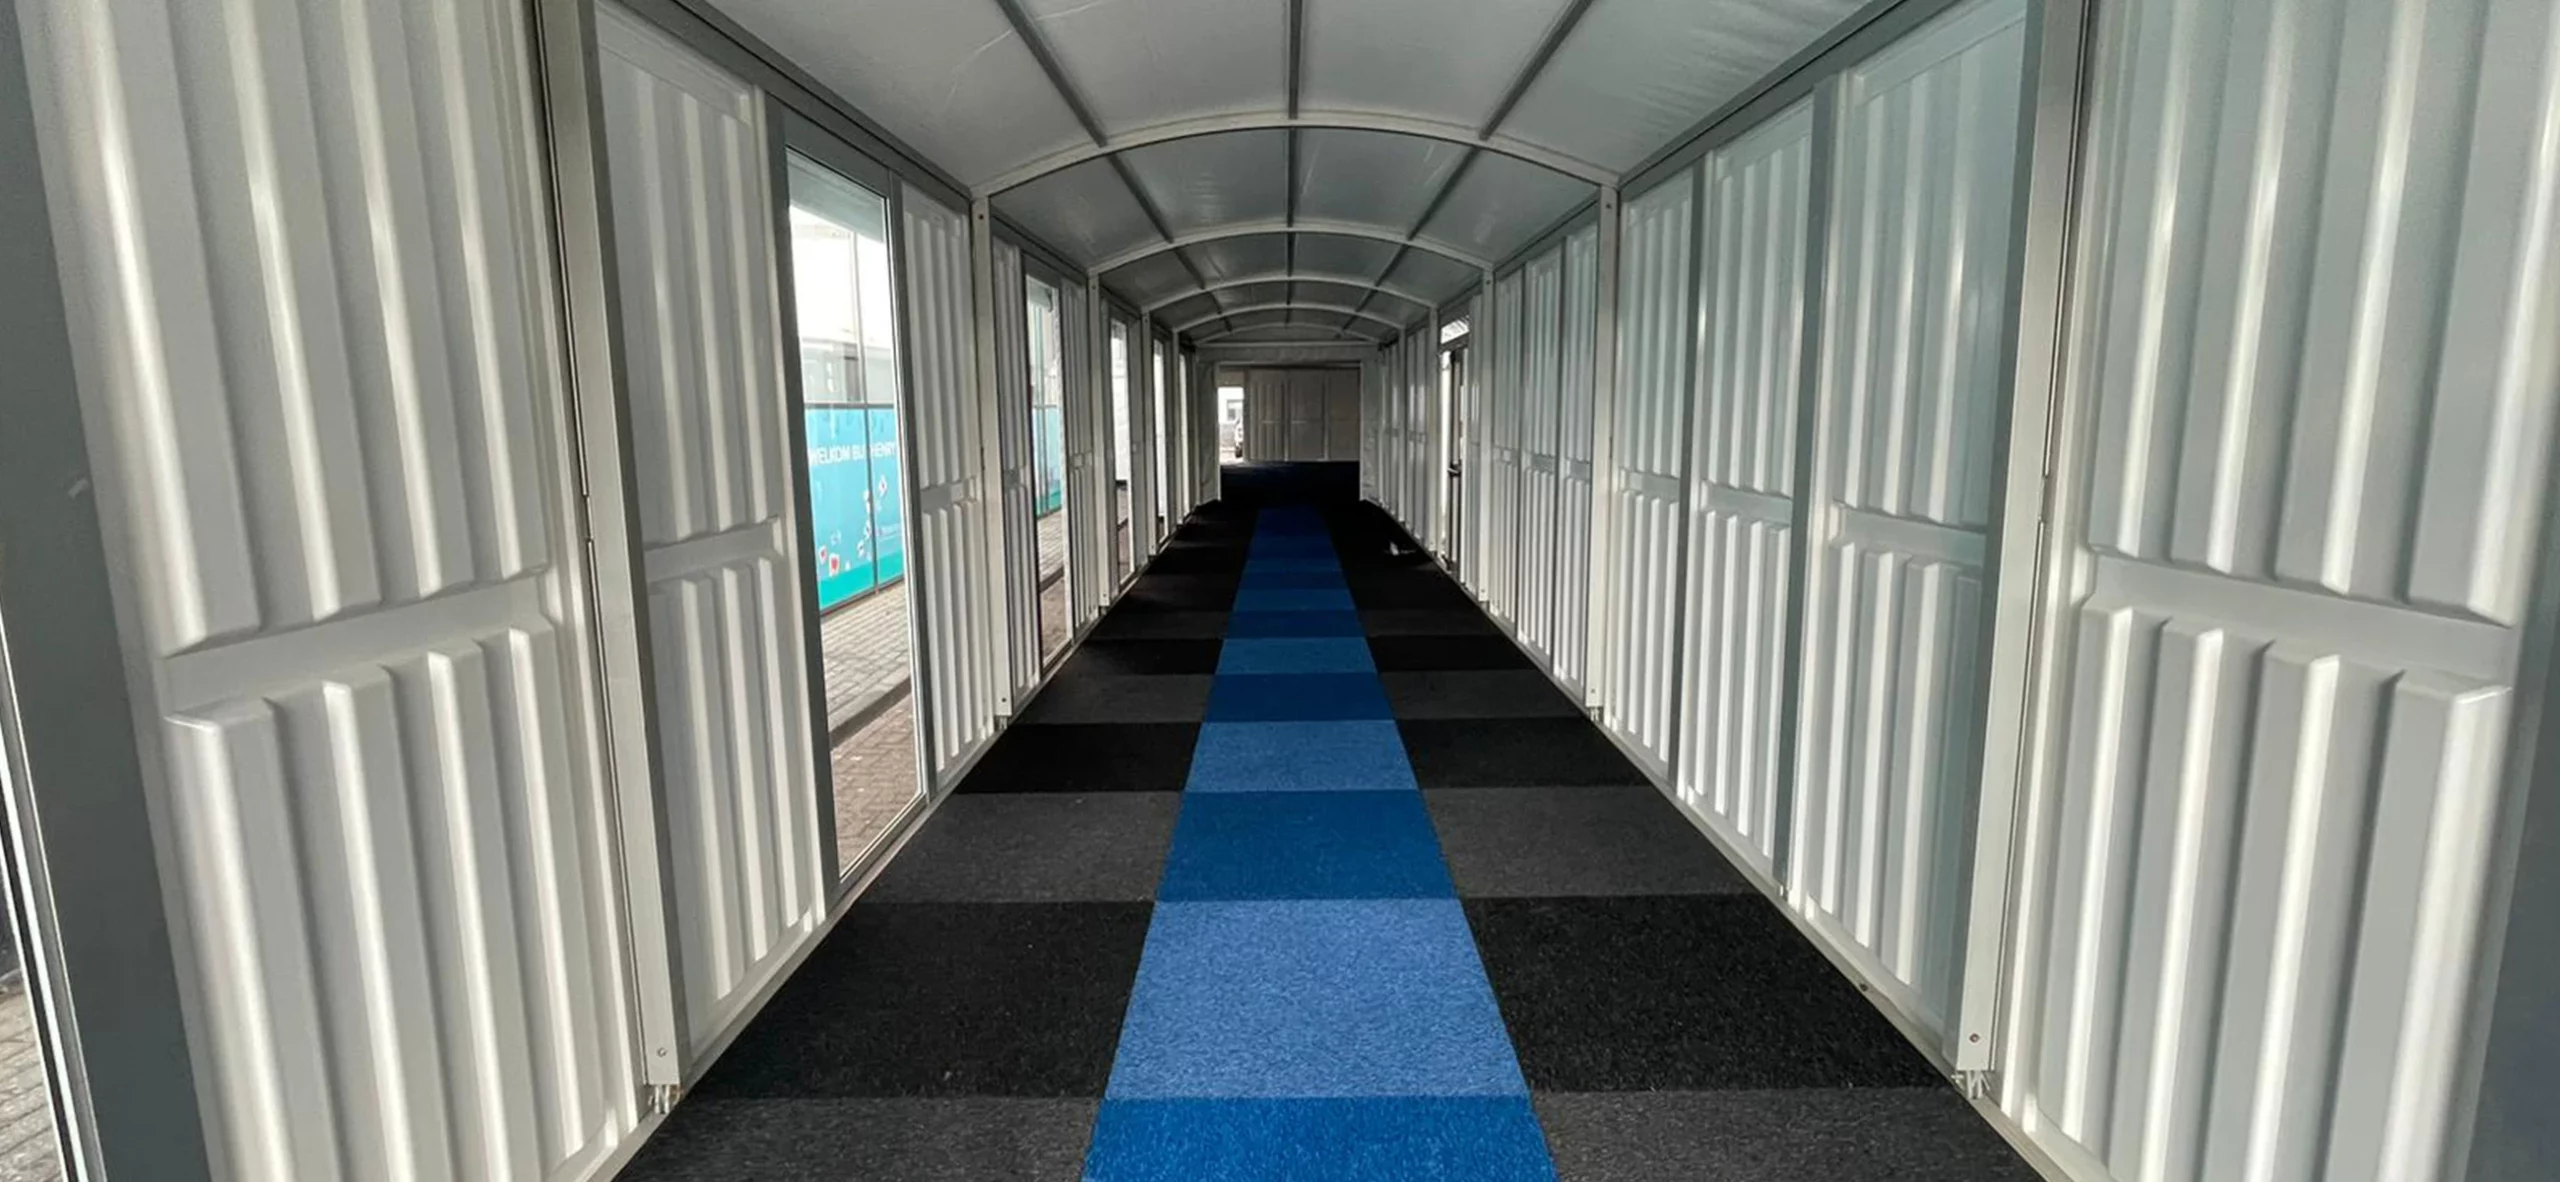 Pergola Walkway mit Hartschalenwandpaneelen und Teppichboden - Innenansicht eines Übergangs zur Eventlocation